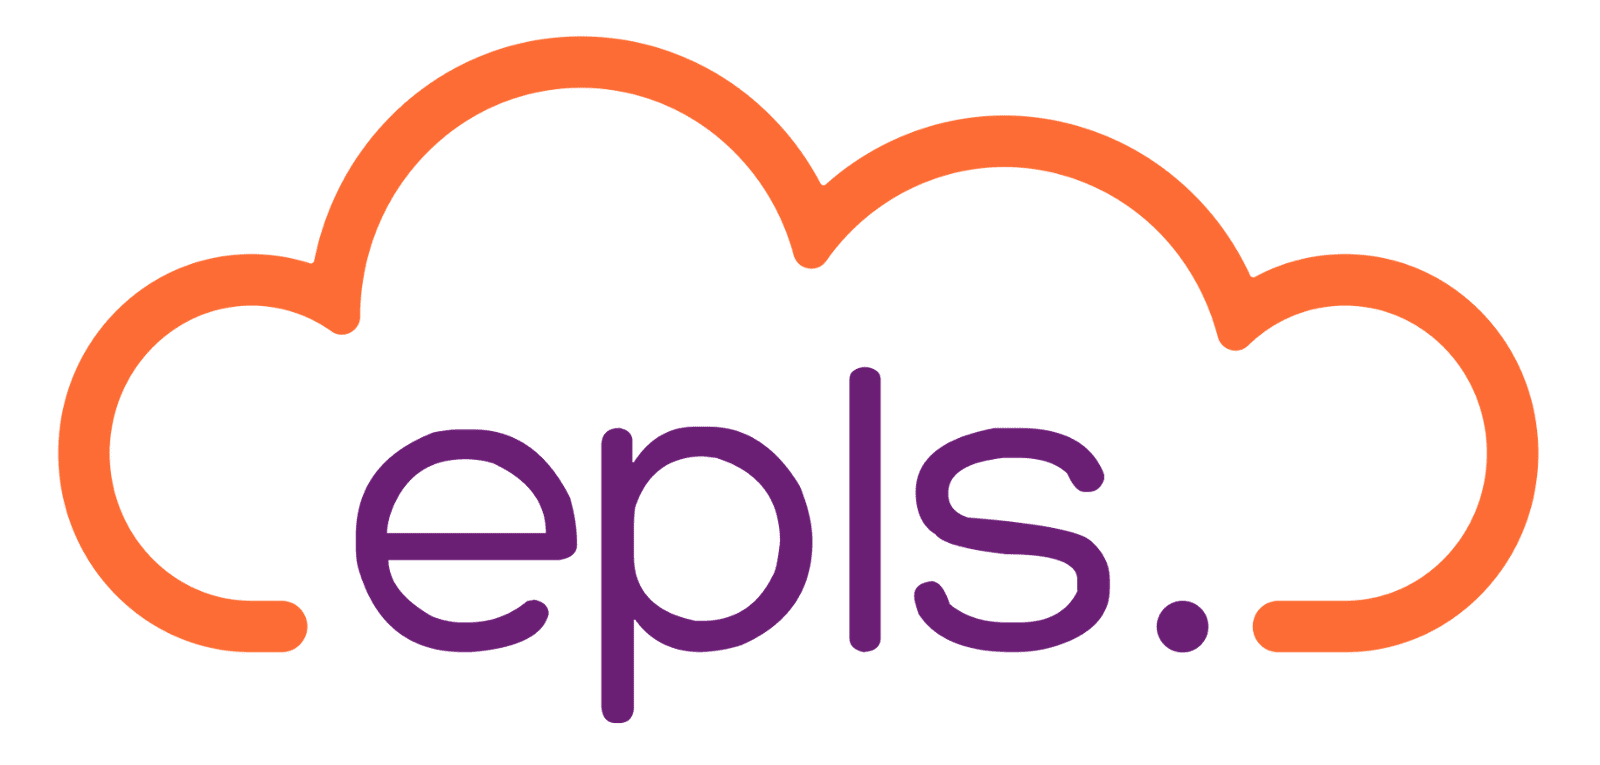 www.epls.cloud